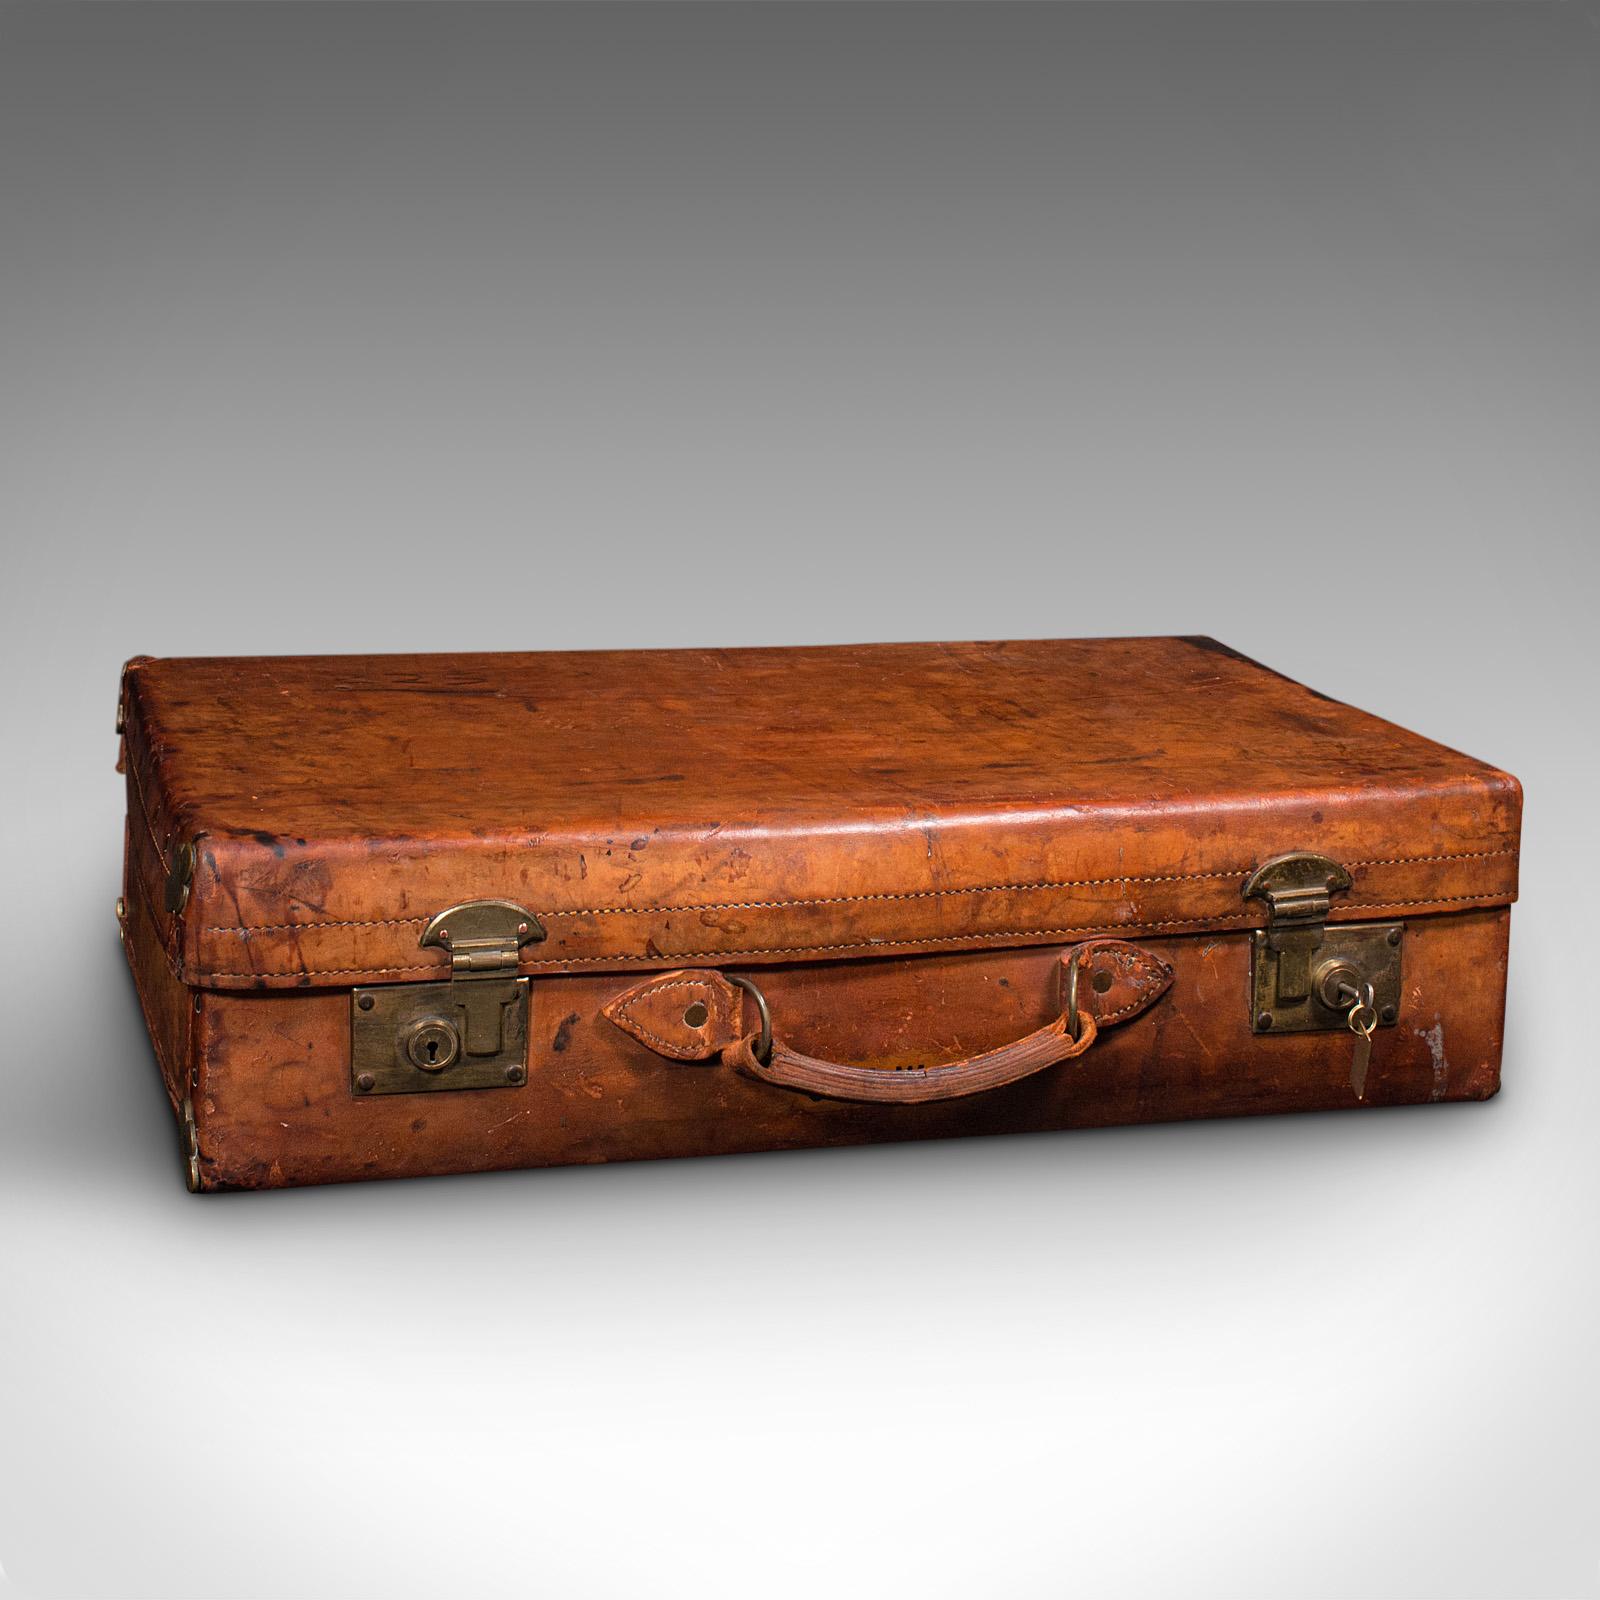 Il s'agit d'une grande valise ancienne. Une mallette de voyage anglaise en cuir et laiton pour gentleman, signée Tom Hill - Sloane Street, datant de la période édouardienne, vers 1910.

De taille et de finition superbes, cette mallette est un